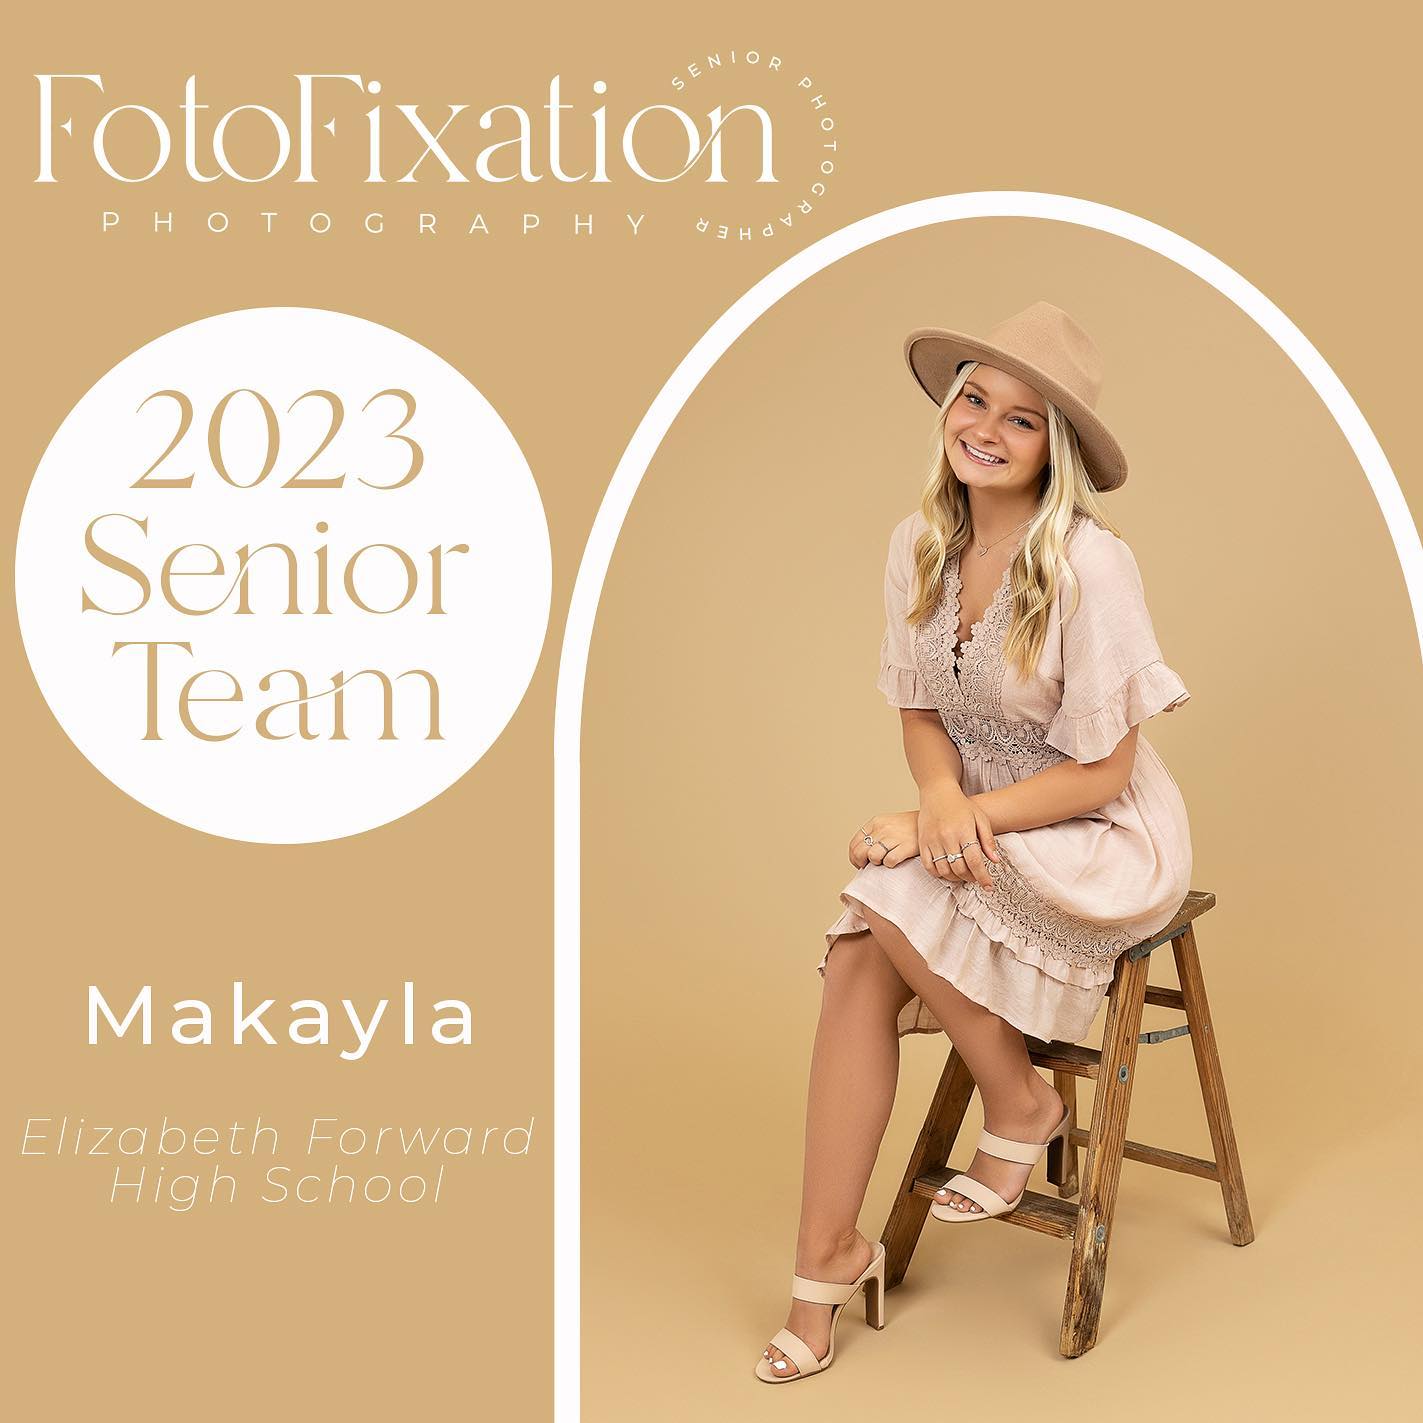 Fotofixation Photography - 2023 Senior Team - Makayla - Elizabeth Forward High School-2